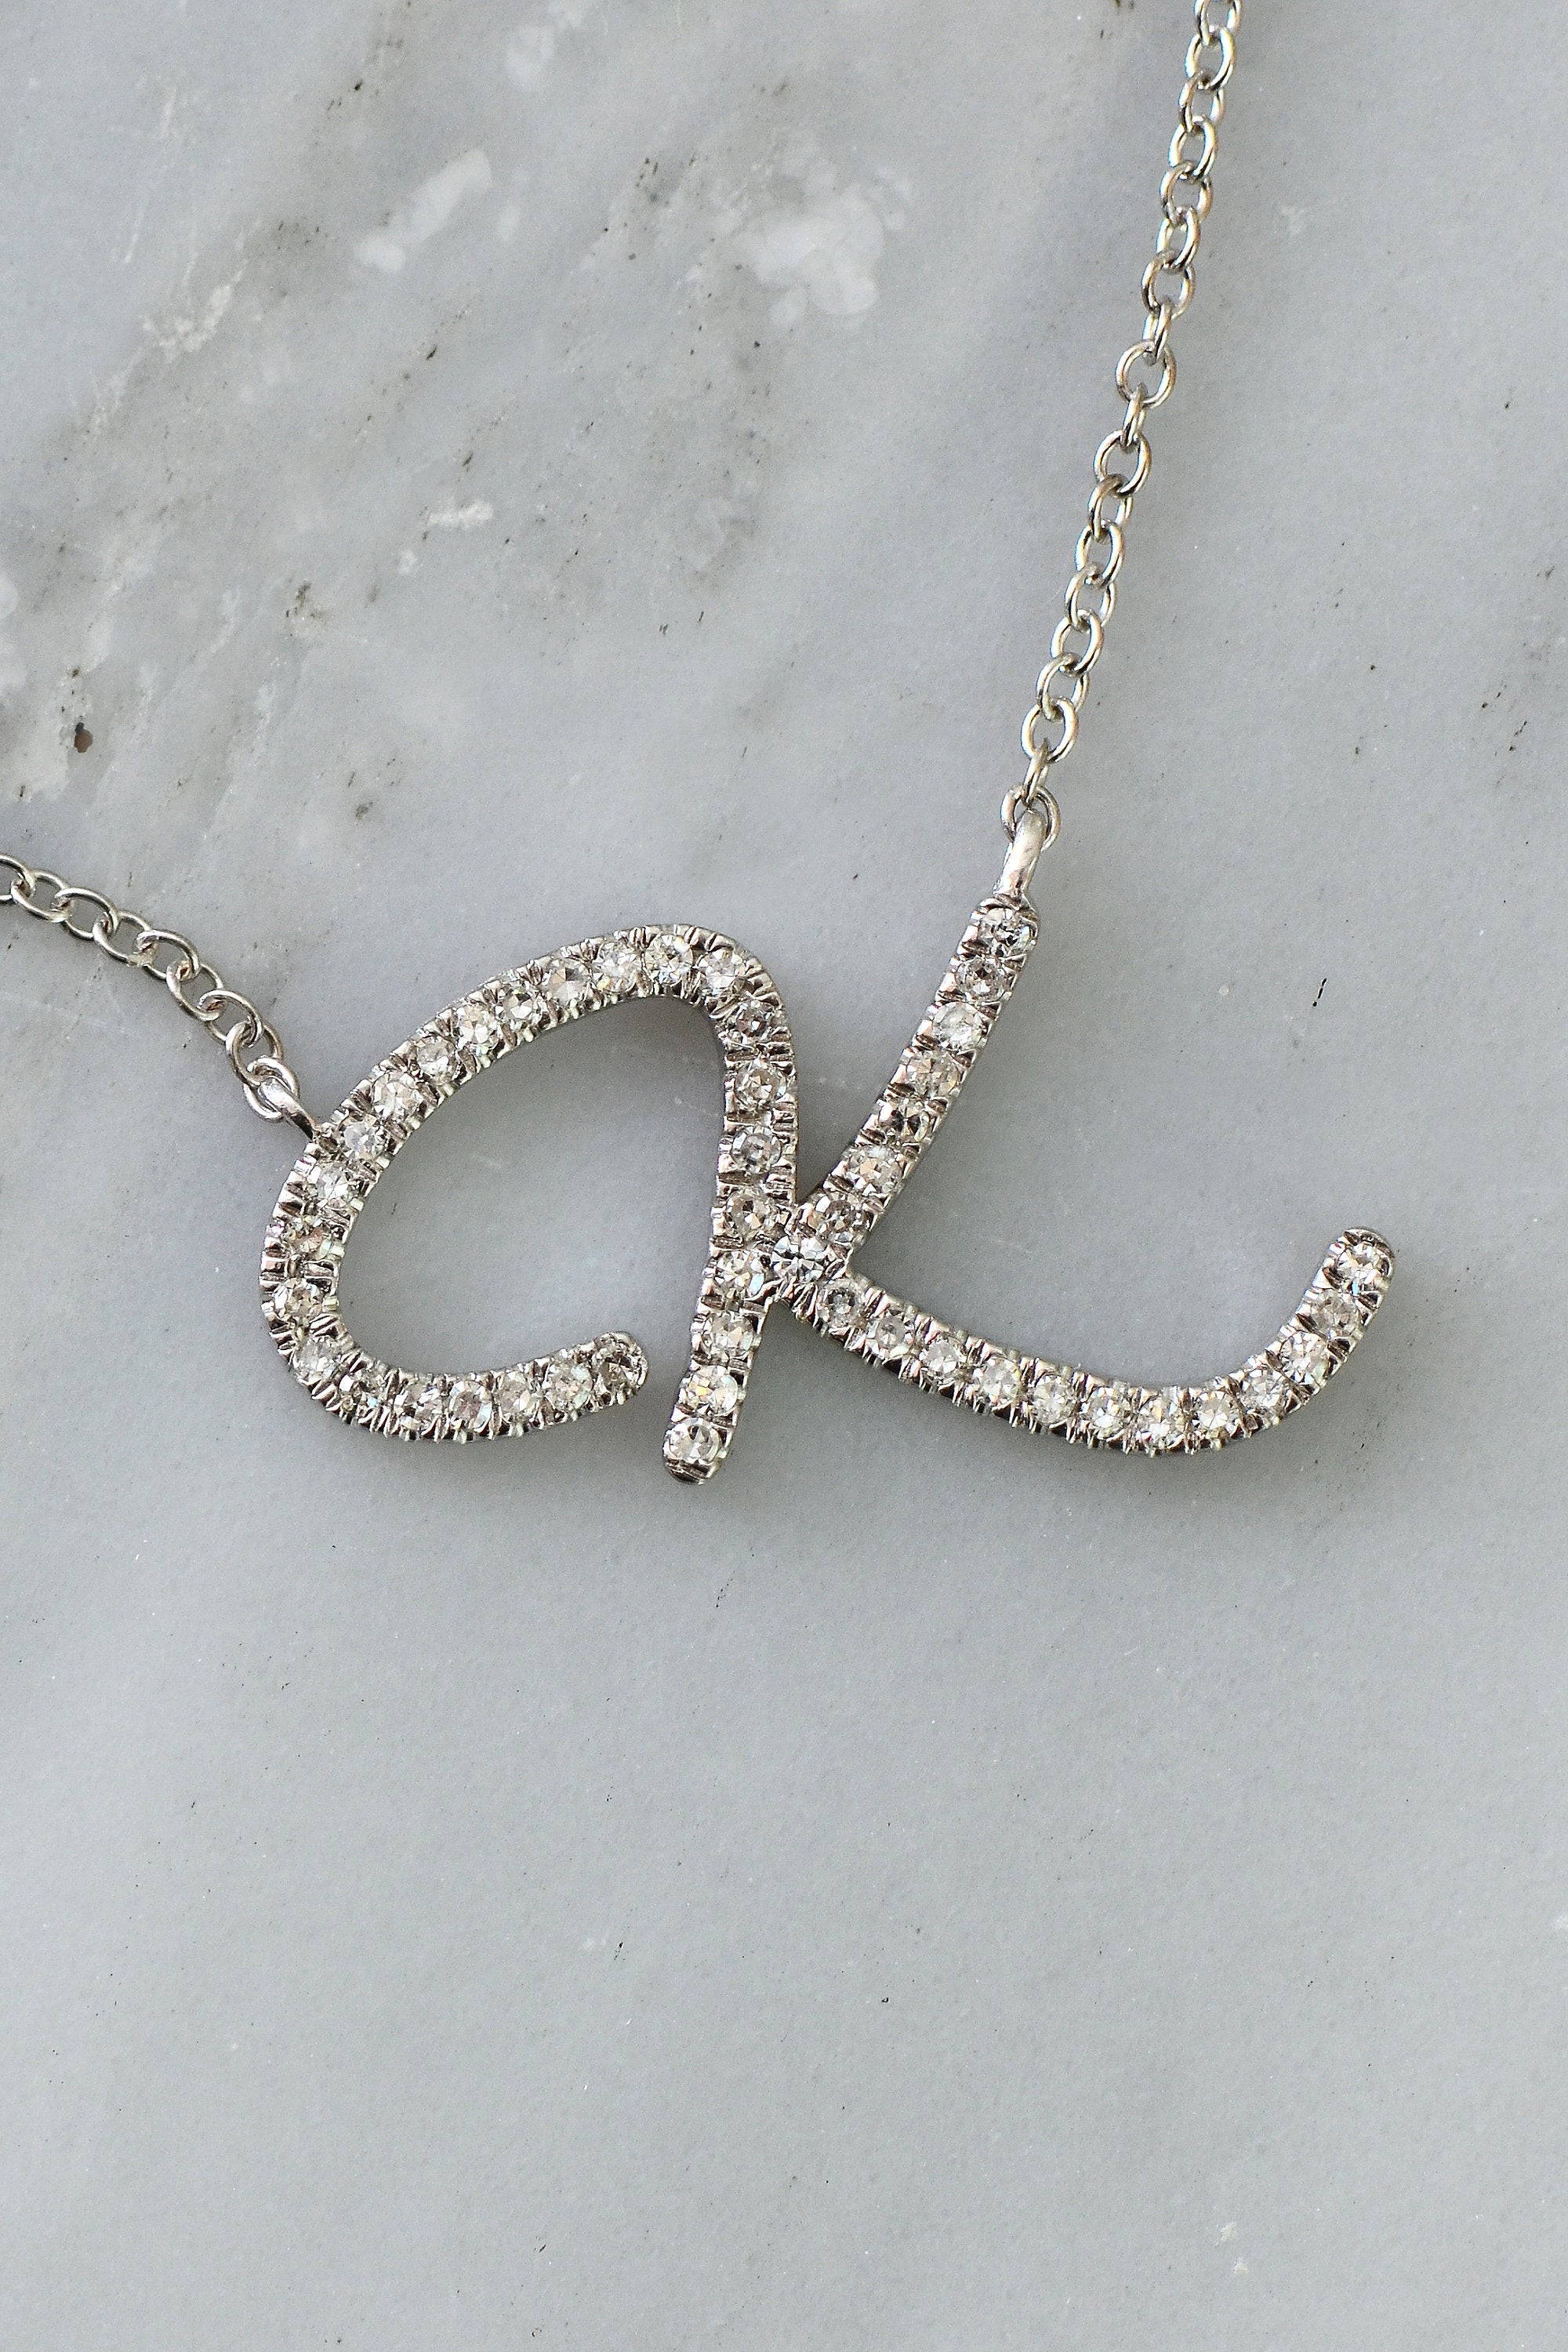 Floating 7 Diamond Necklace | Customized Diamond Jewelry For Women